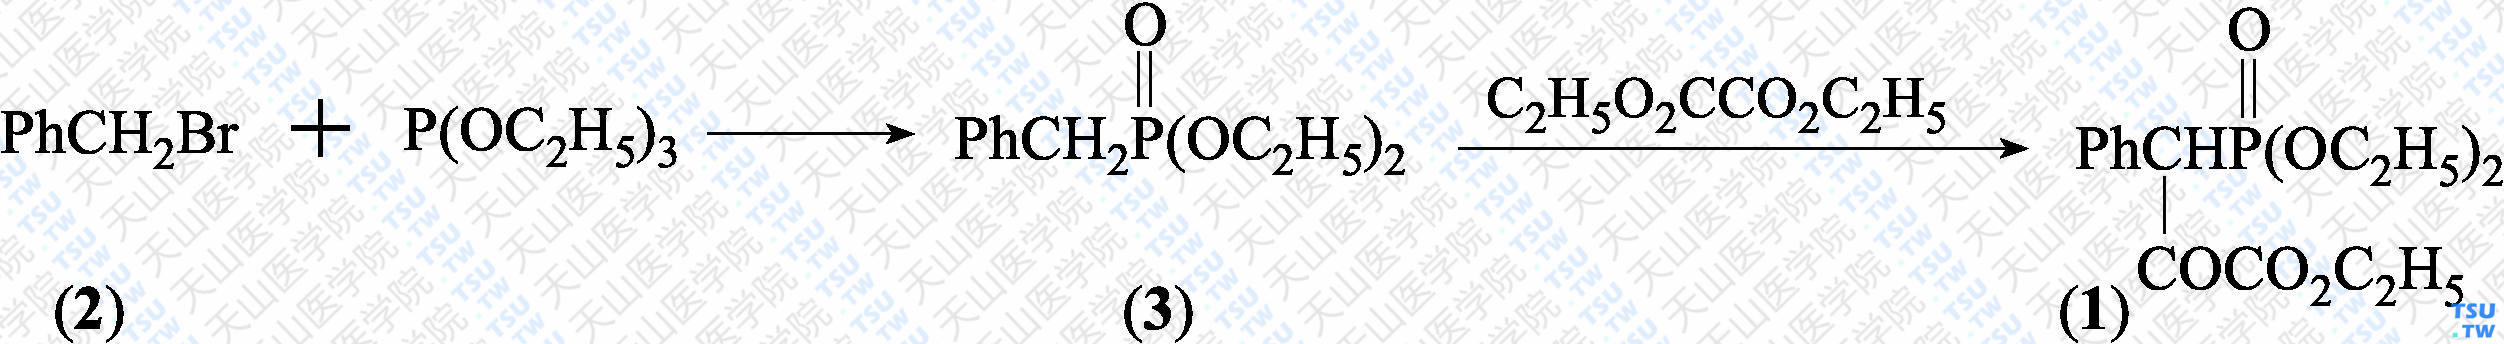 3-苯基-3-（二乙氧基膦酰）丙酮酸乙酯（分子式：C<sub>15</sub>H<sub>21</sub>O<sub>6</sub>P）的合成方法路线及其结构式